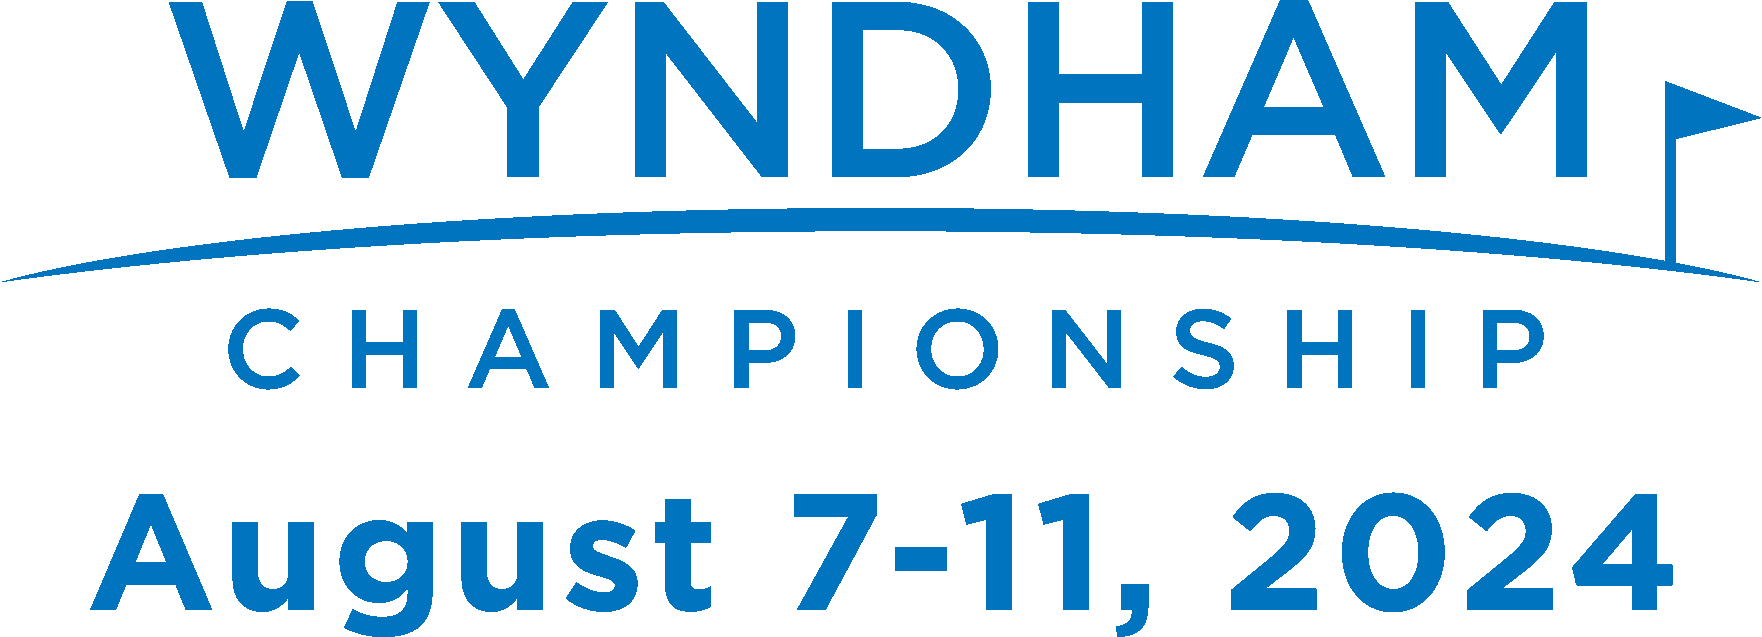 Wyndham Championship 2024 Field Results Jobye